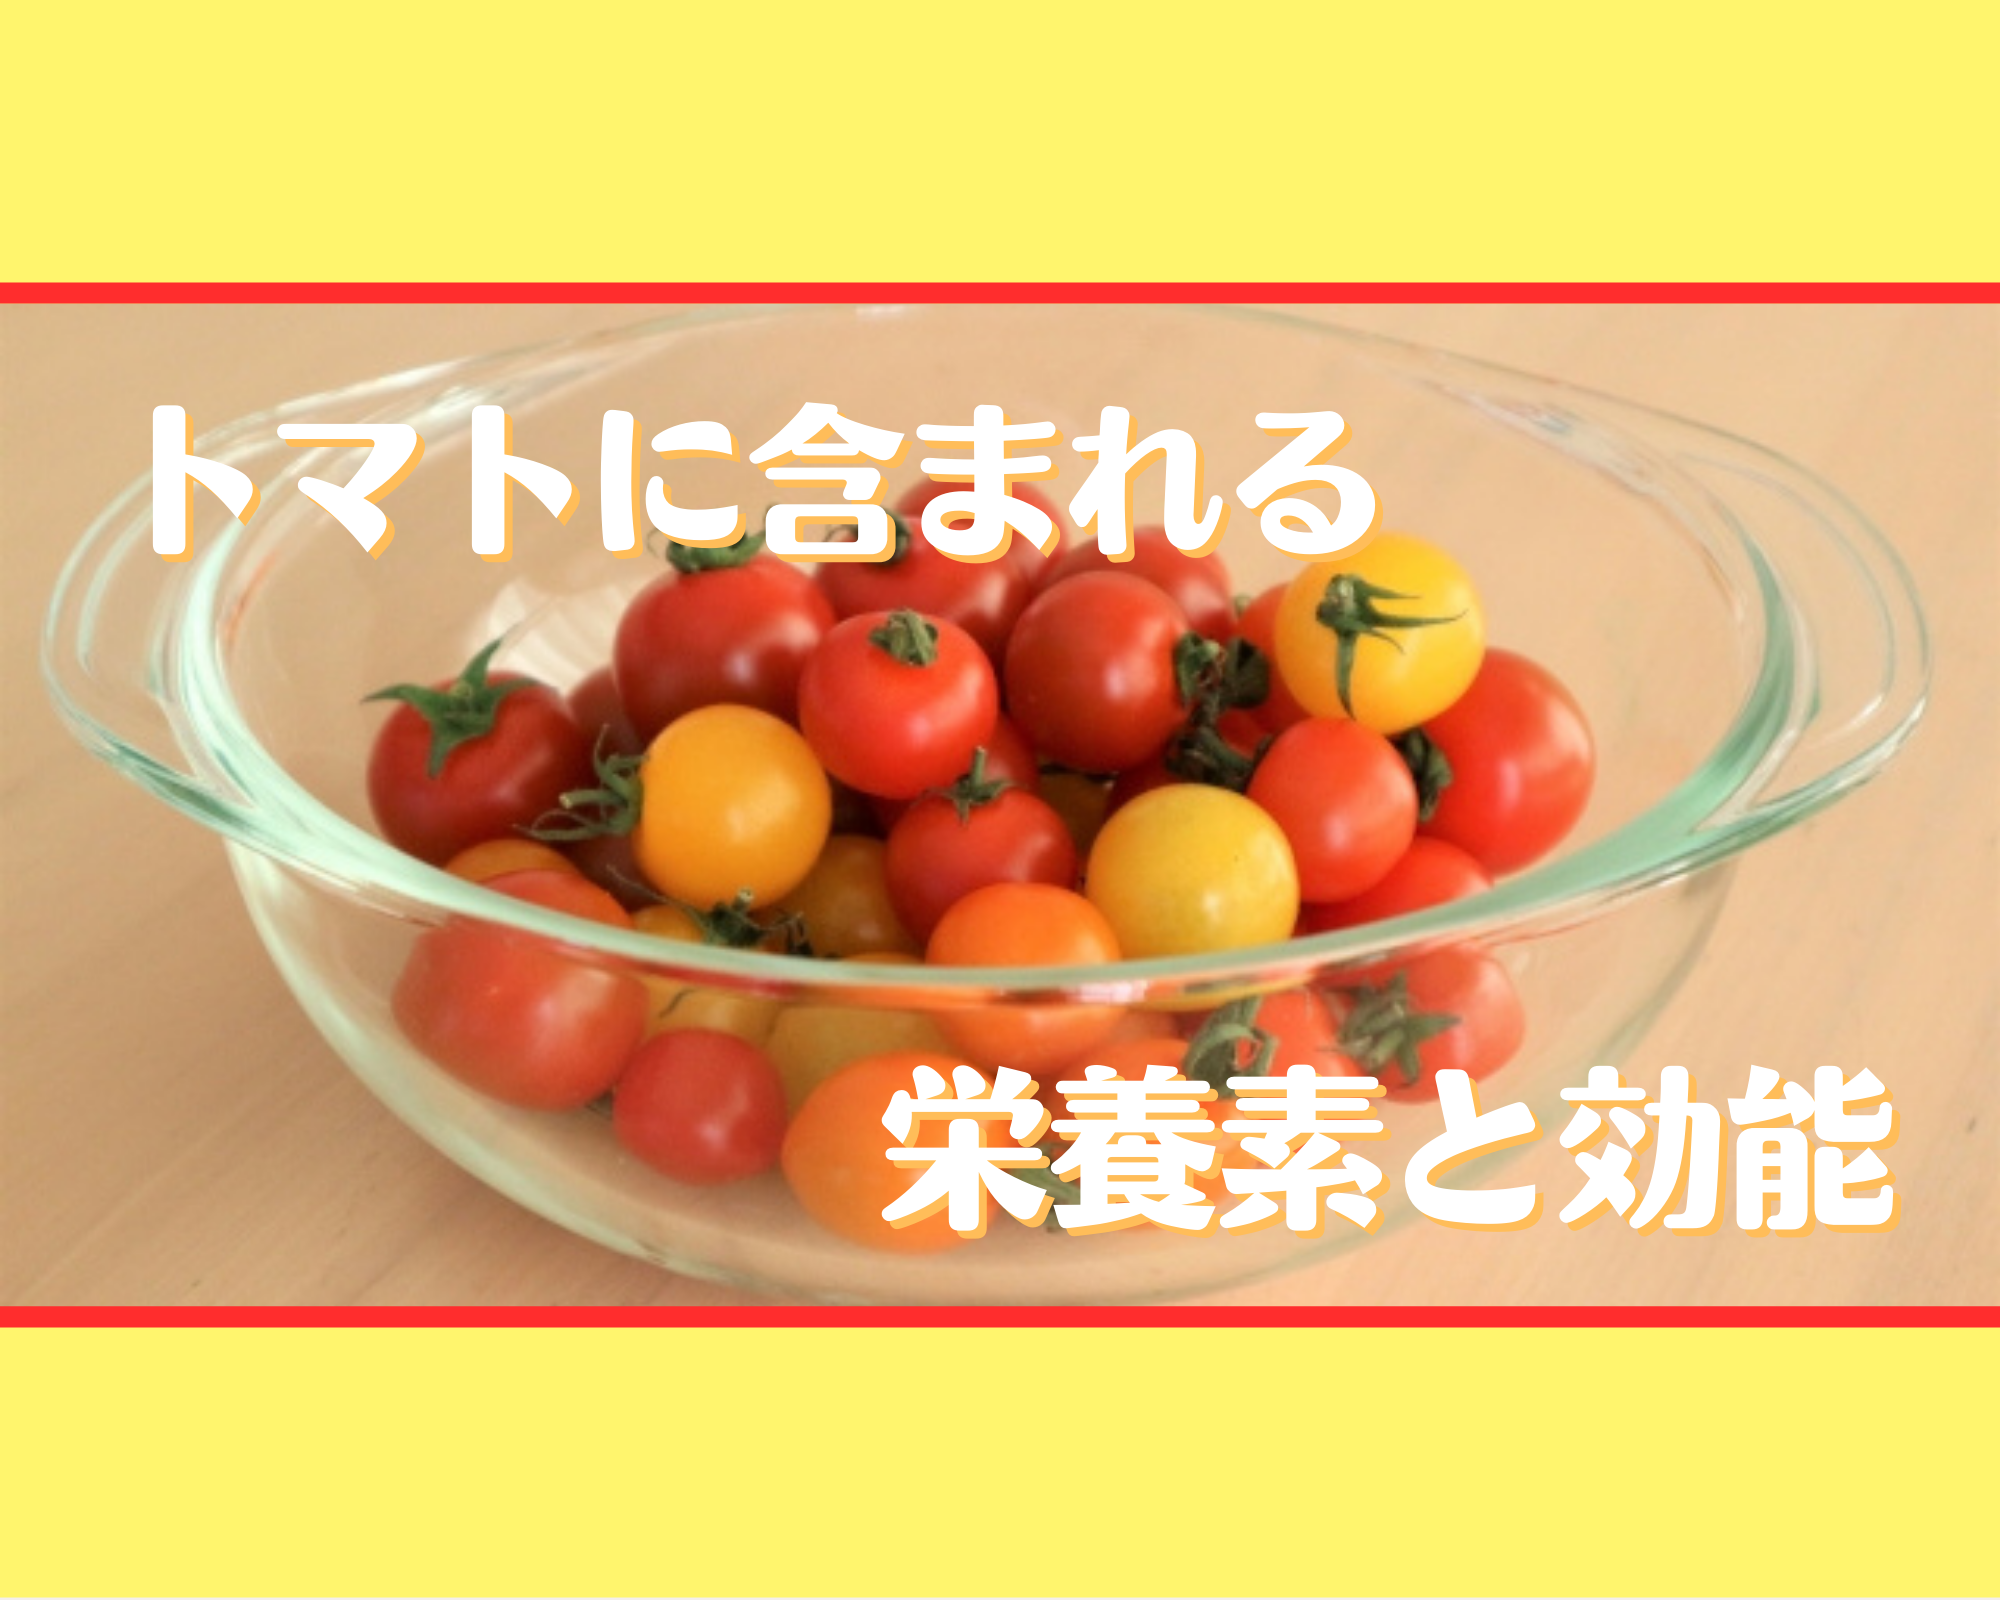 トマトに含まれる栄養素と効能